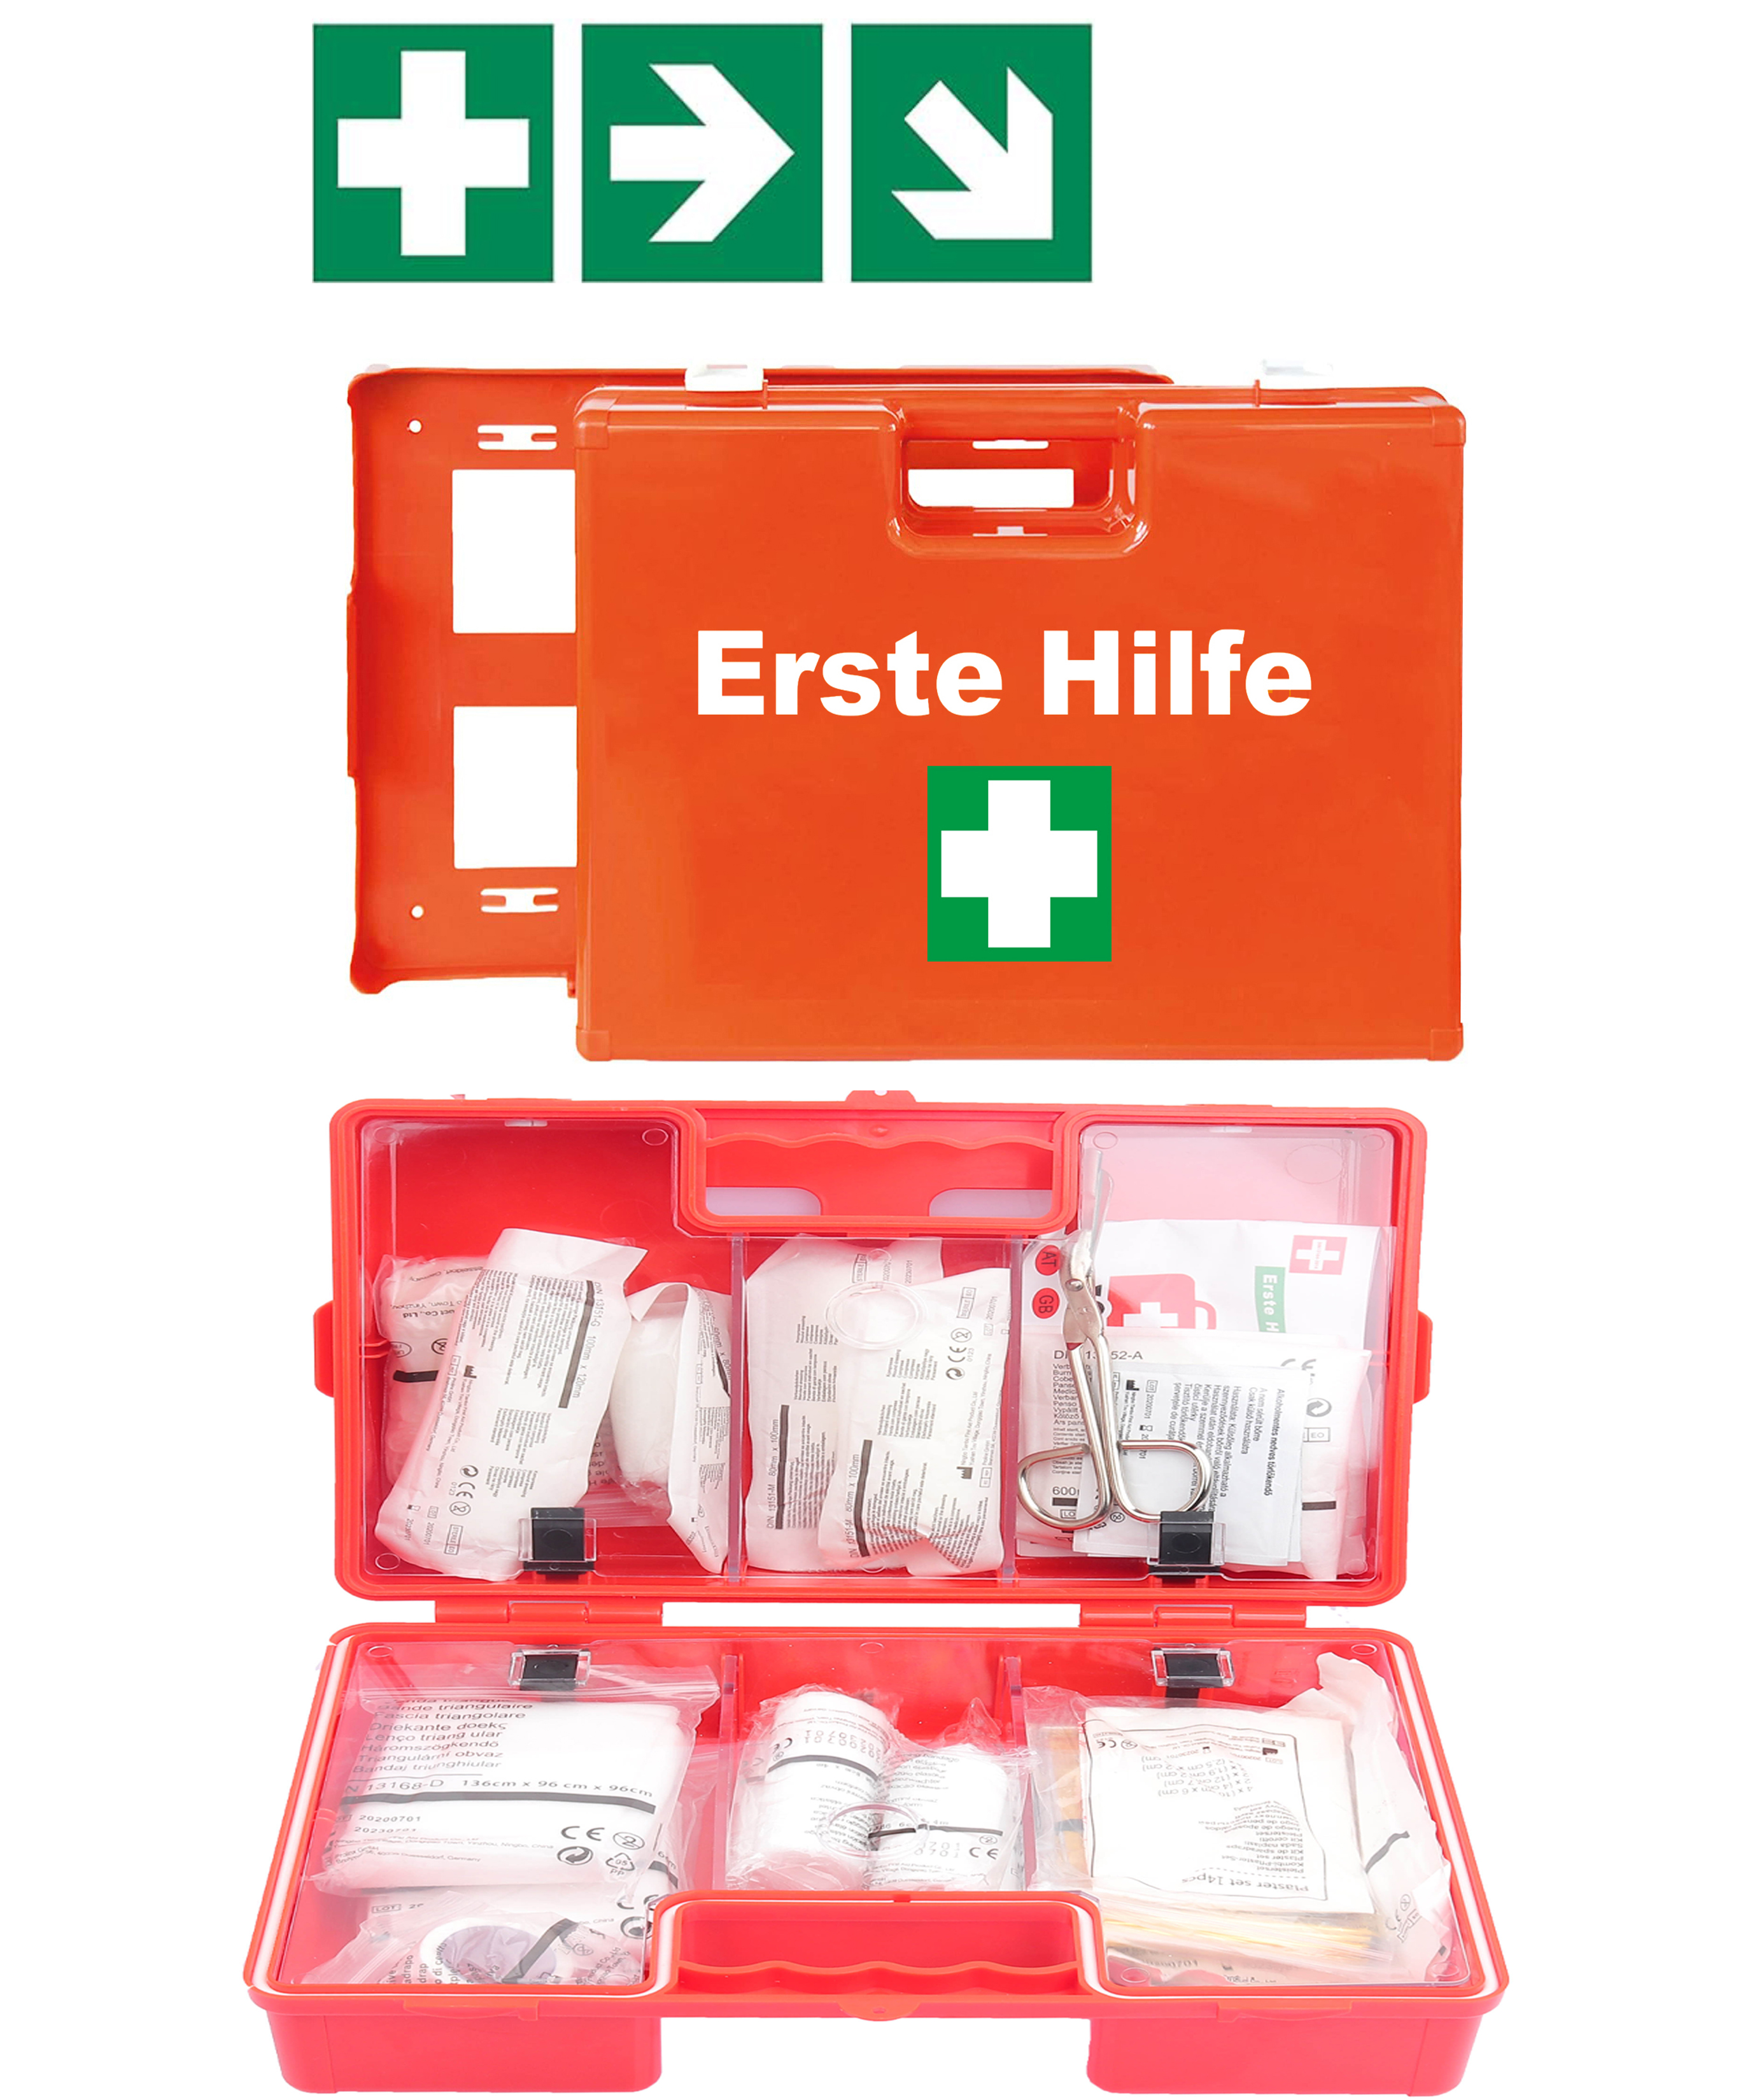 First Aid Only Verbandkasten C DIN 13157